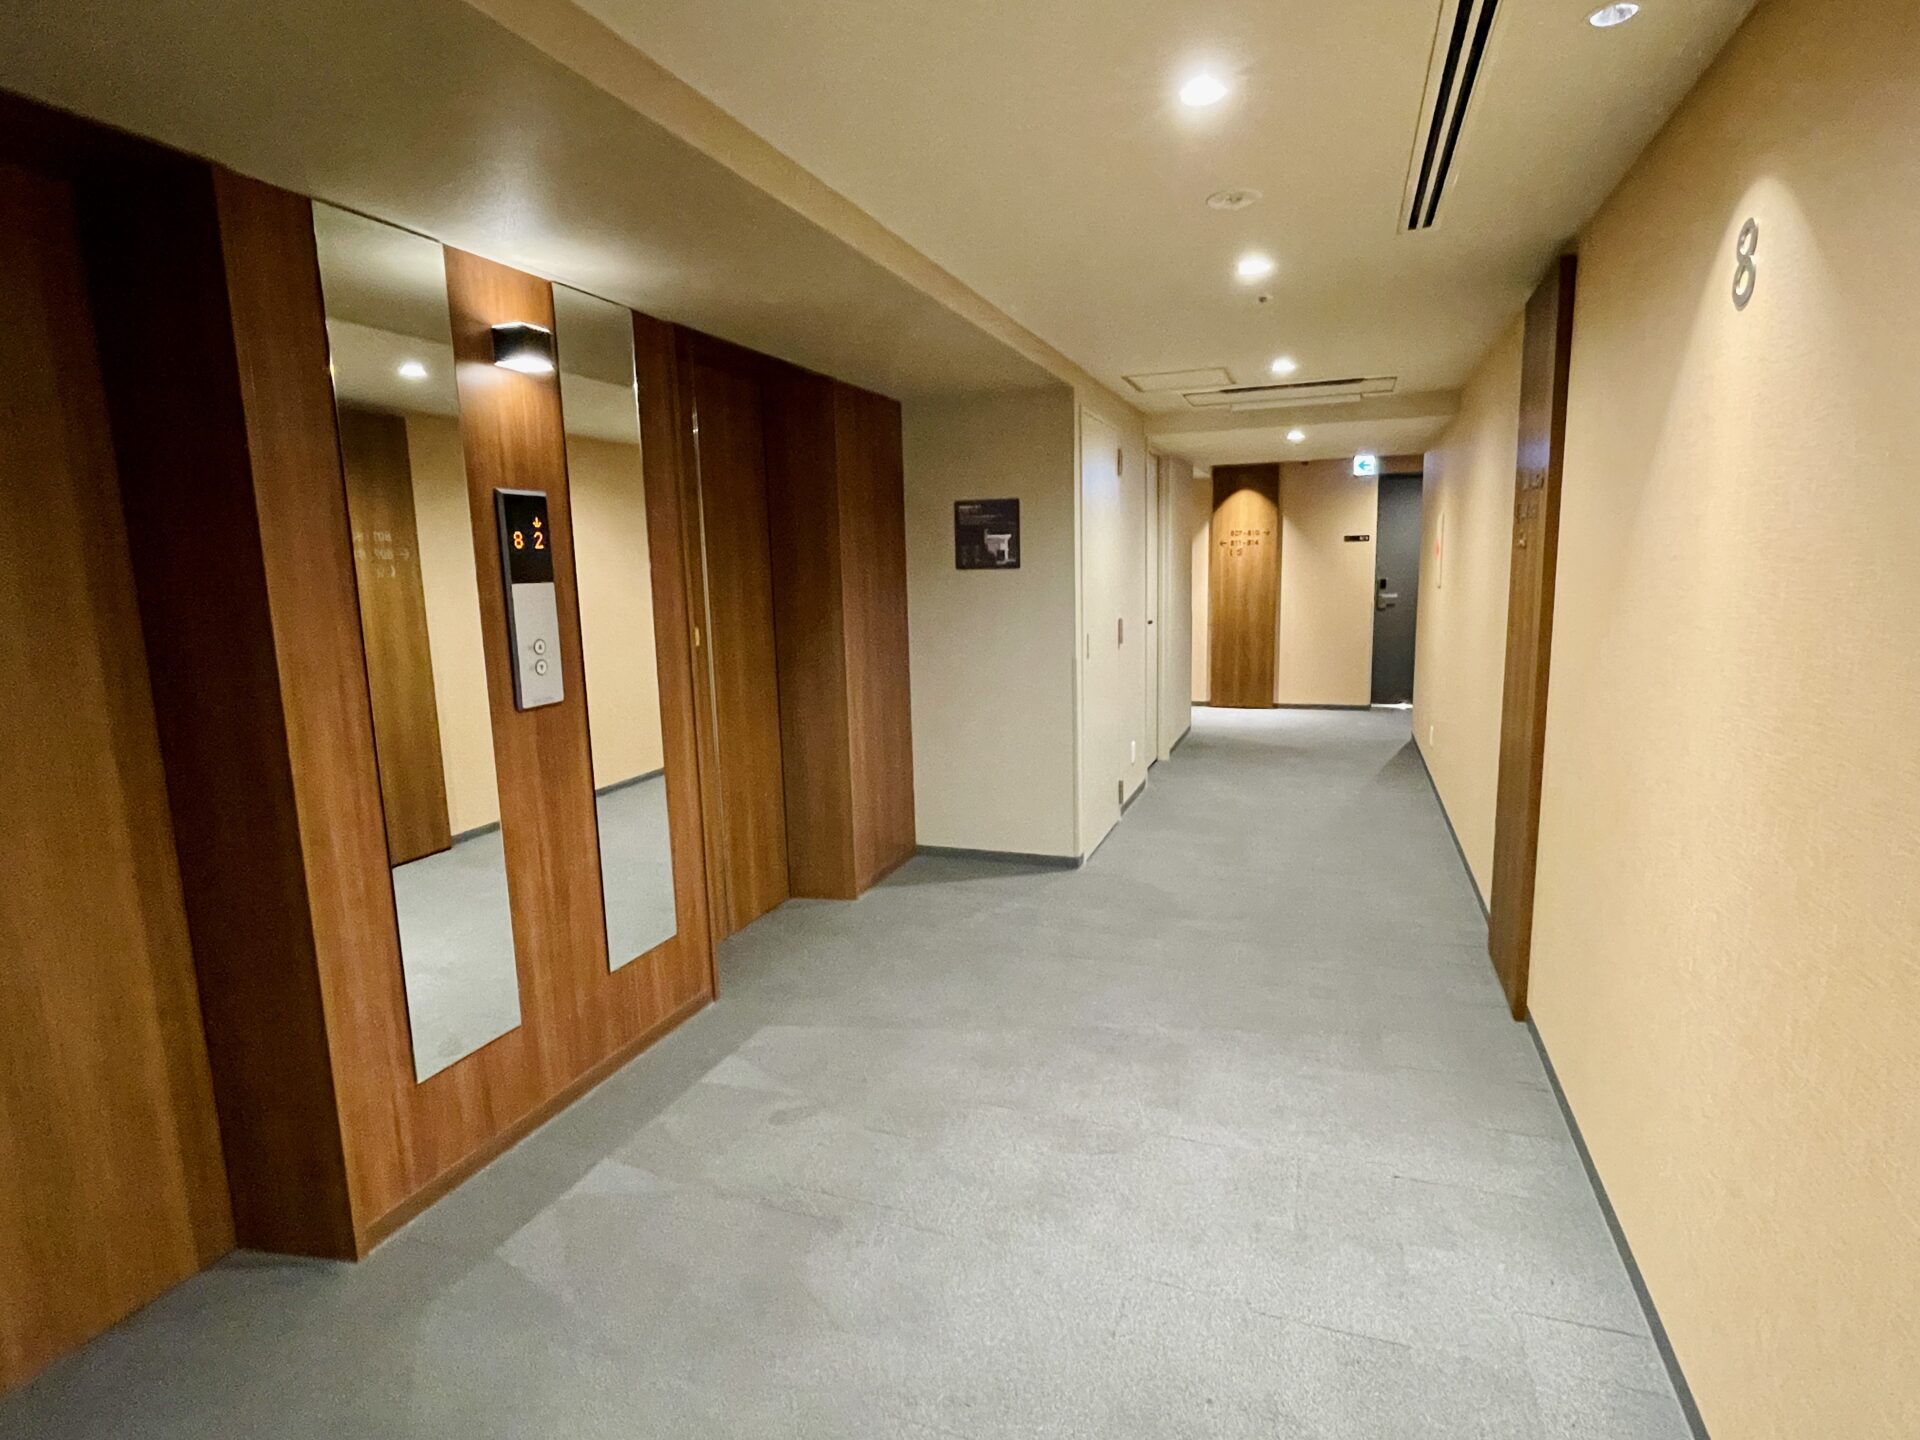 「ドーミーイン広島ANNEX」客室フロア廊下の様子